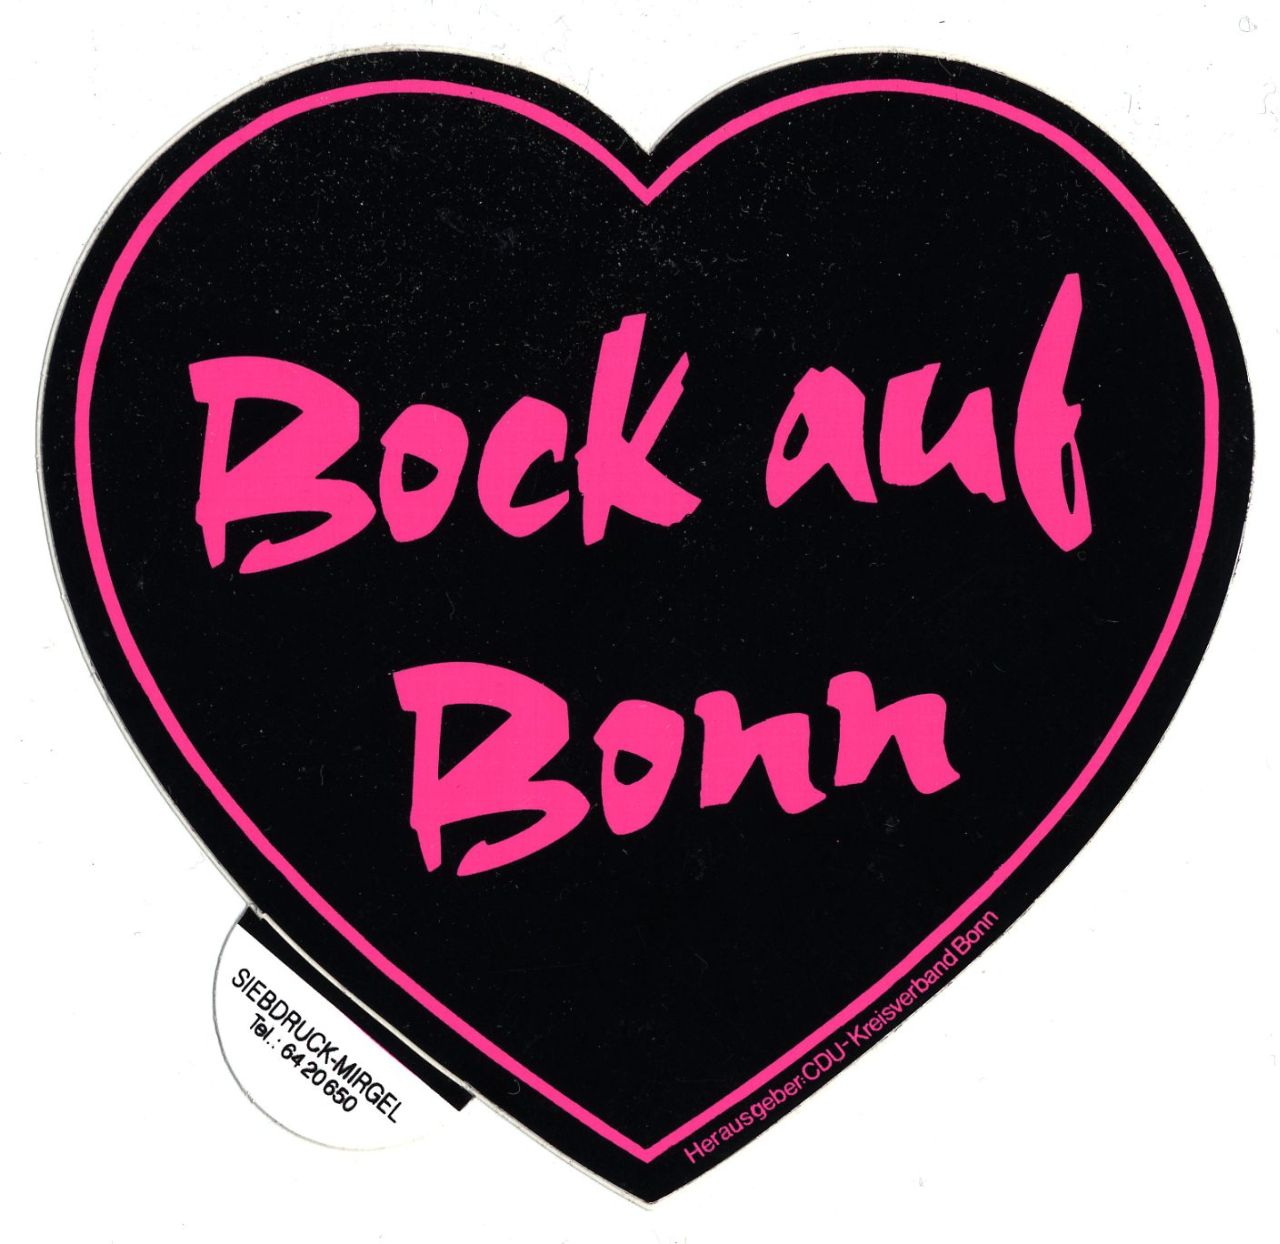 Herzförmiger Aufkleber mit pinker Schrift (Bock auf Bonn) und pinker Umrandung auf schwarzem Untergrund.